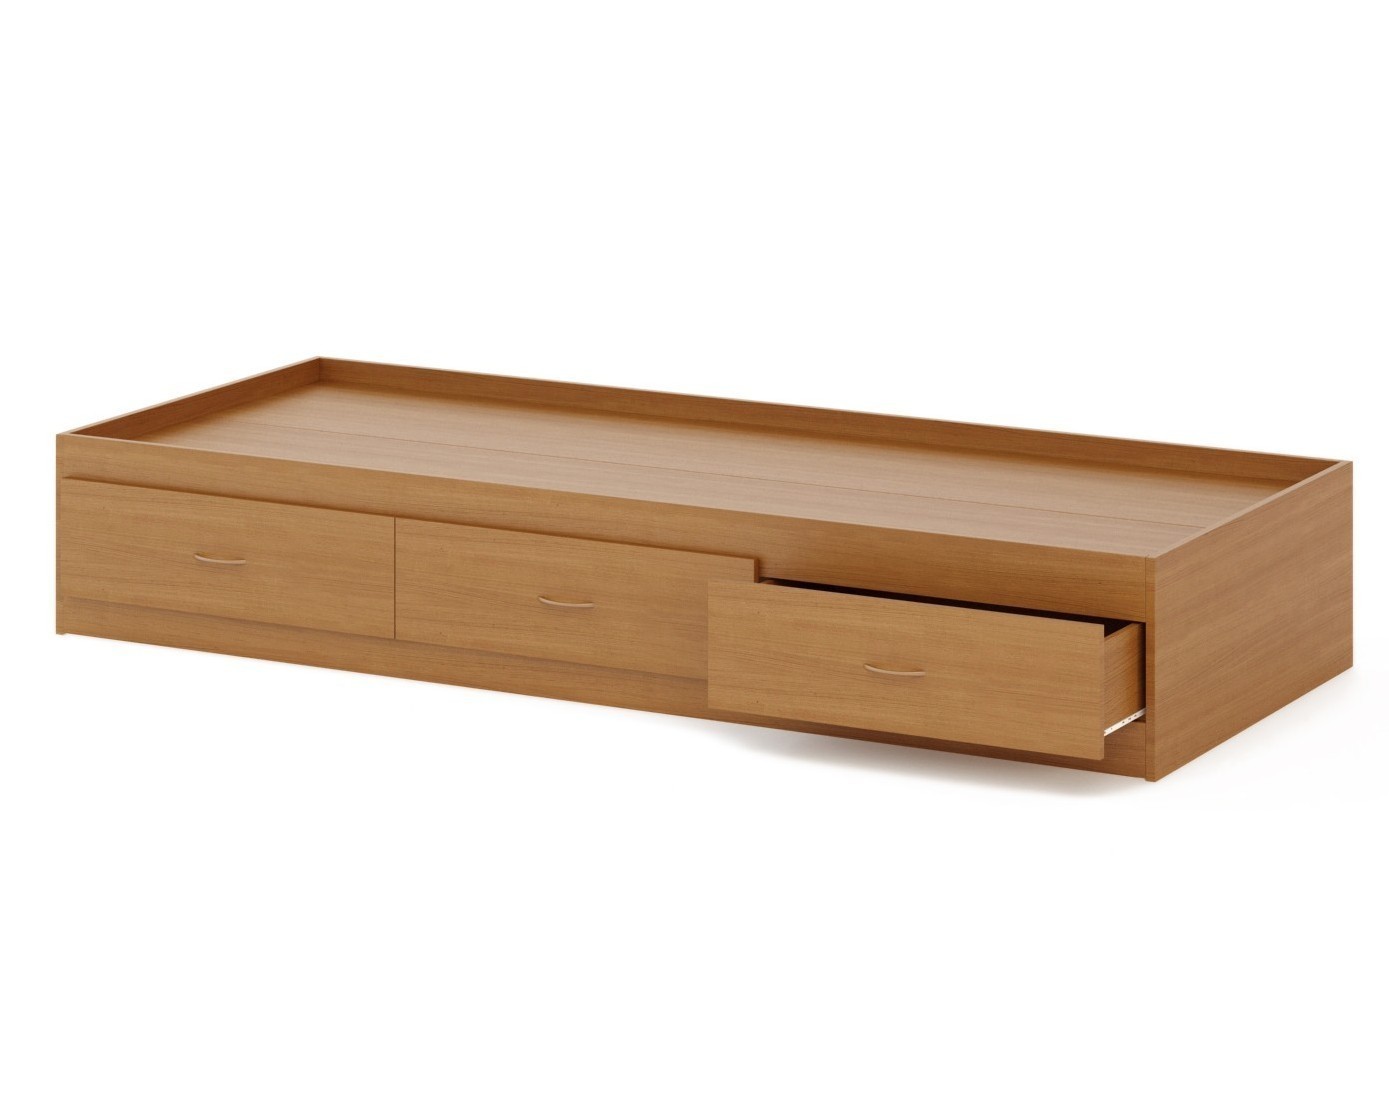 кровать деревянная с ящиками для хранения 90х200